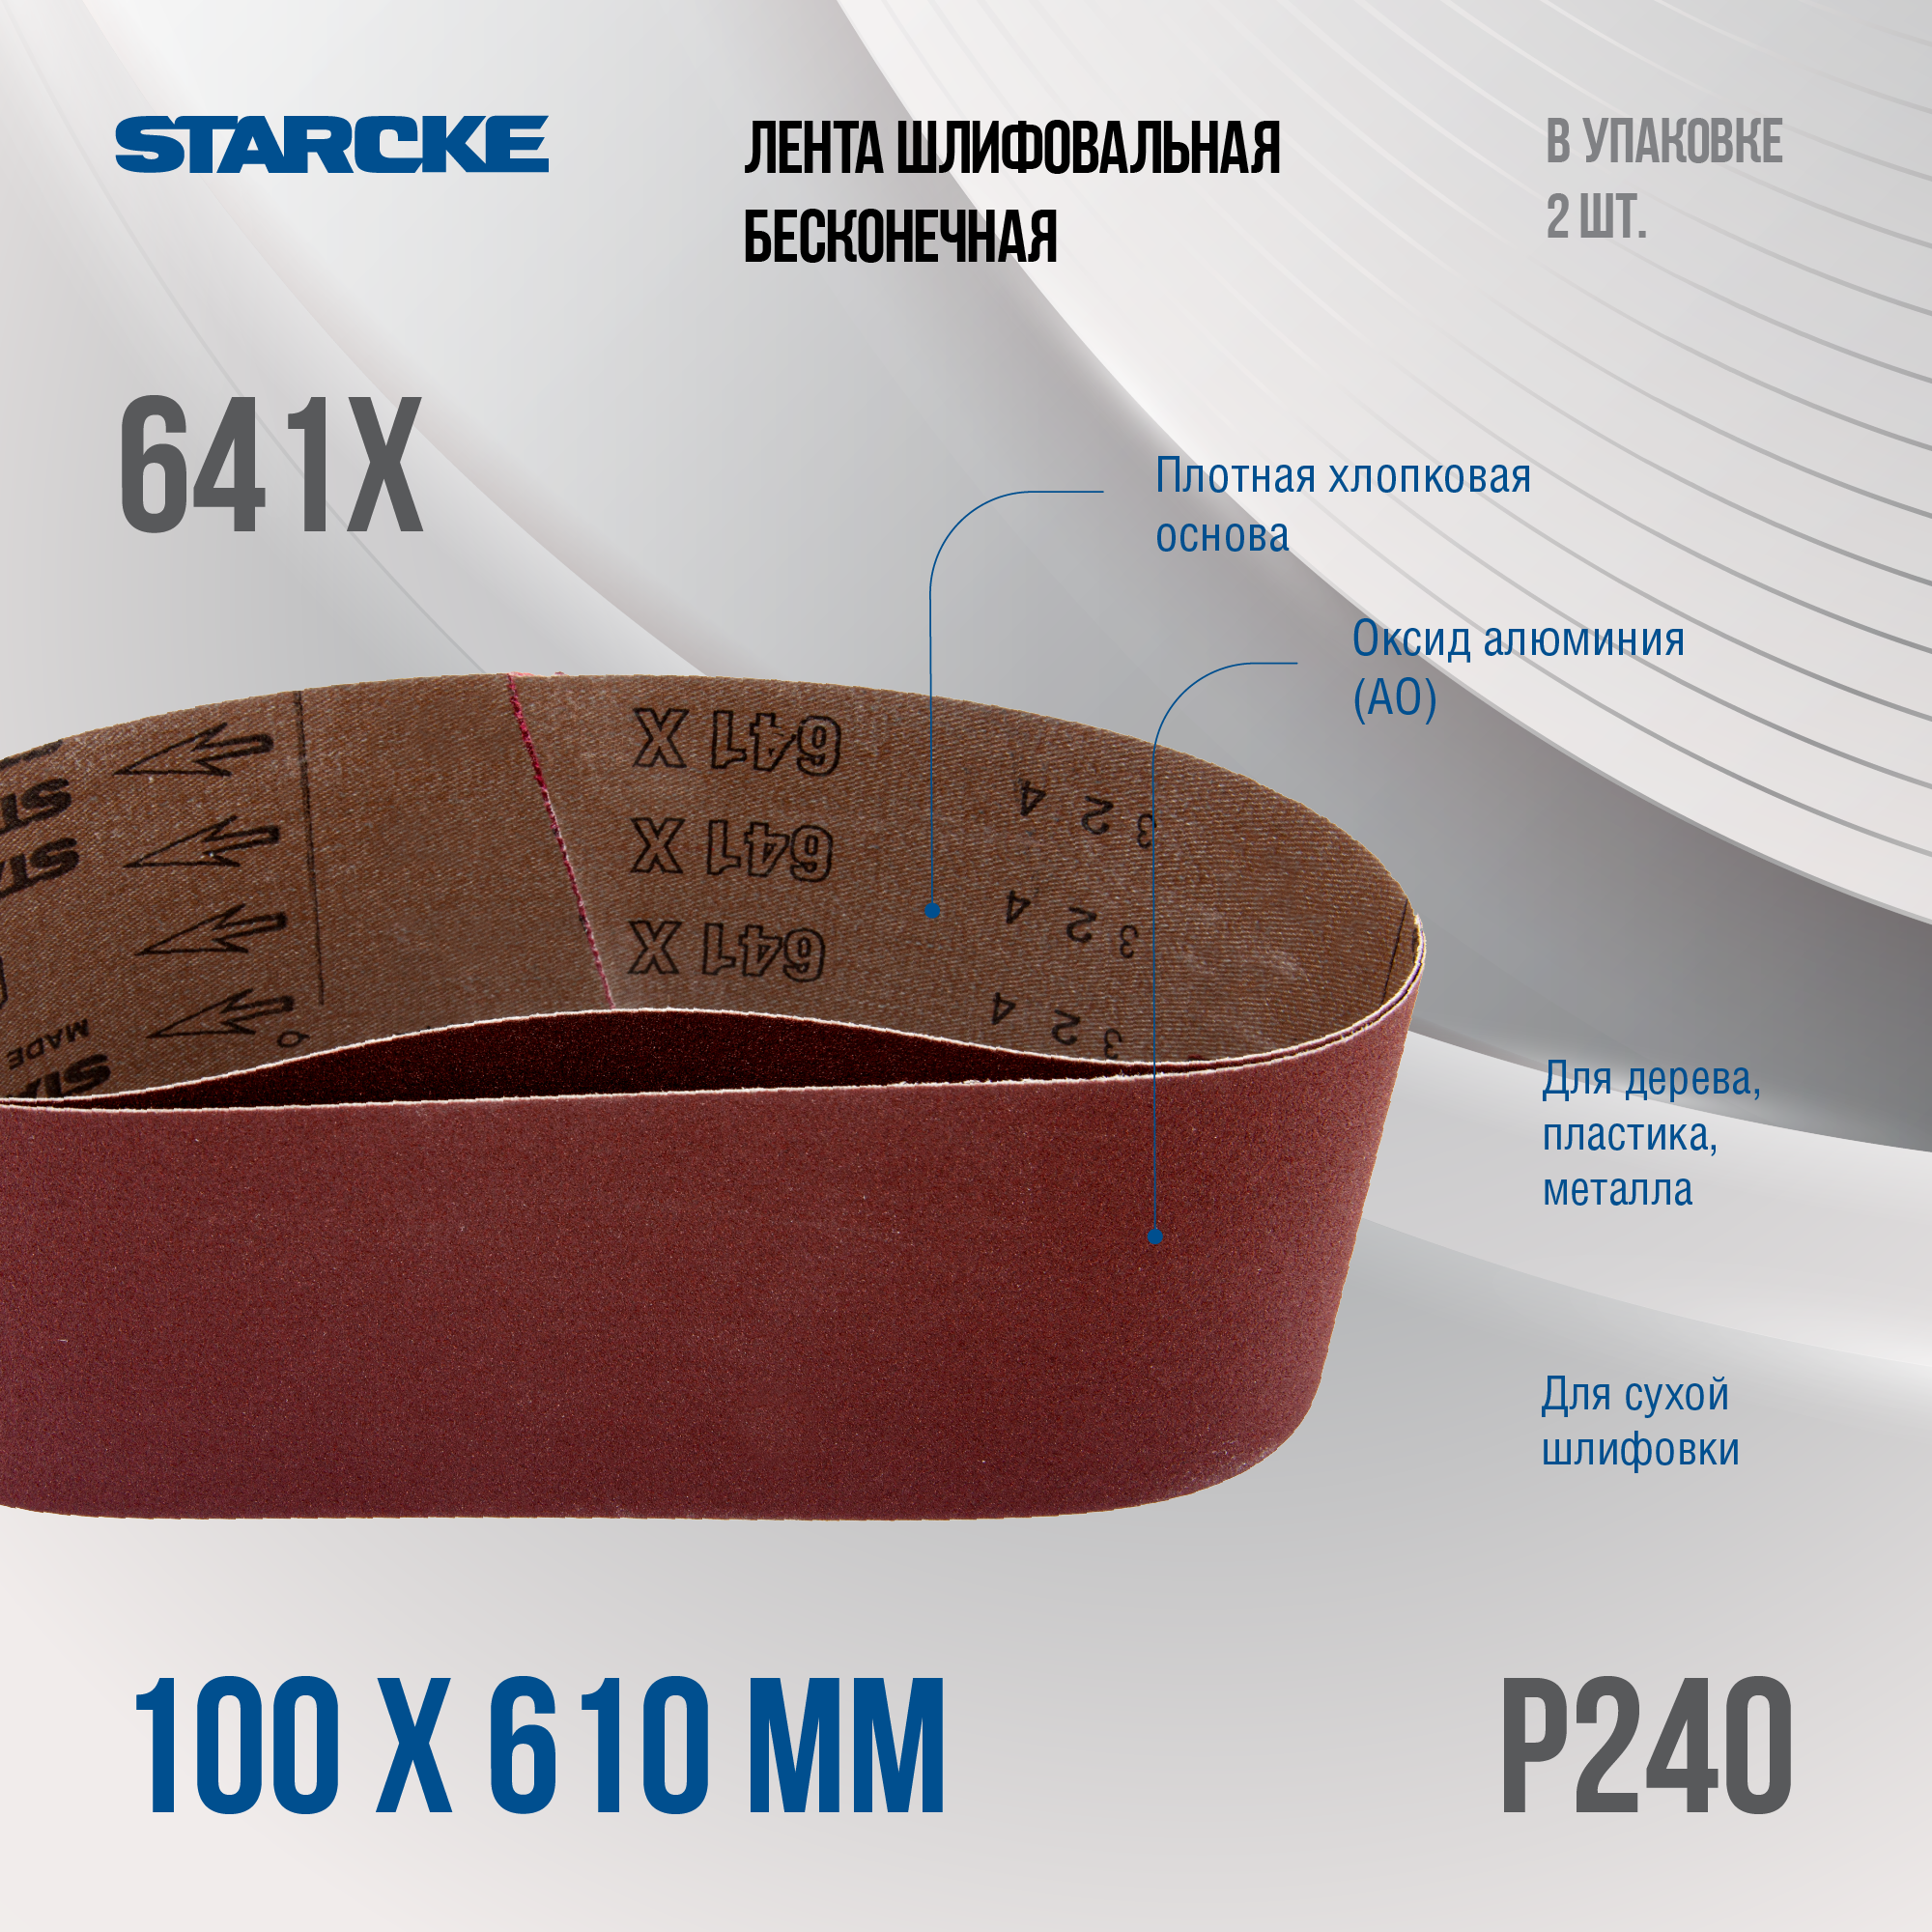 Лента шлифовальная бесконечная Starcke 641X размер 100x 610мм зерно P240 (упак 2шт.)